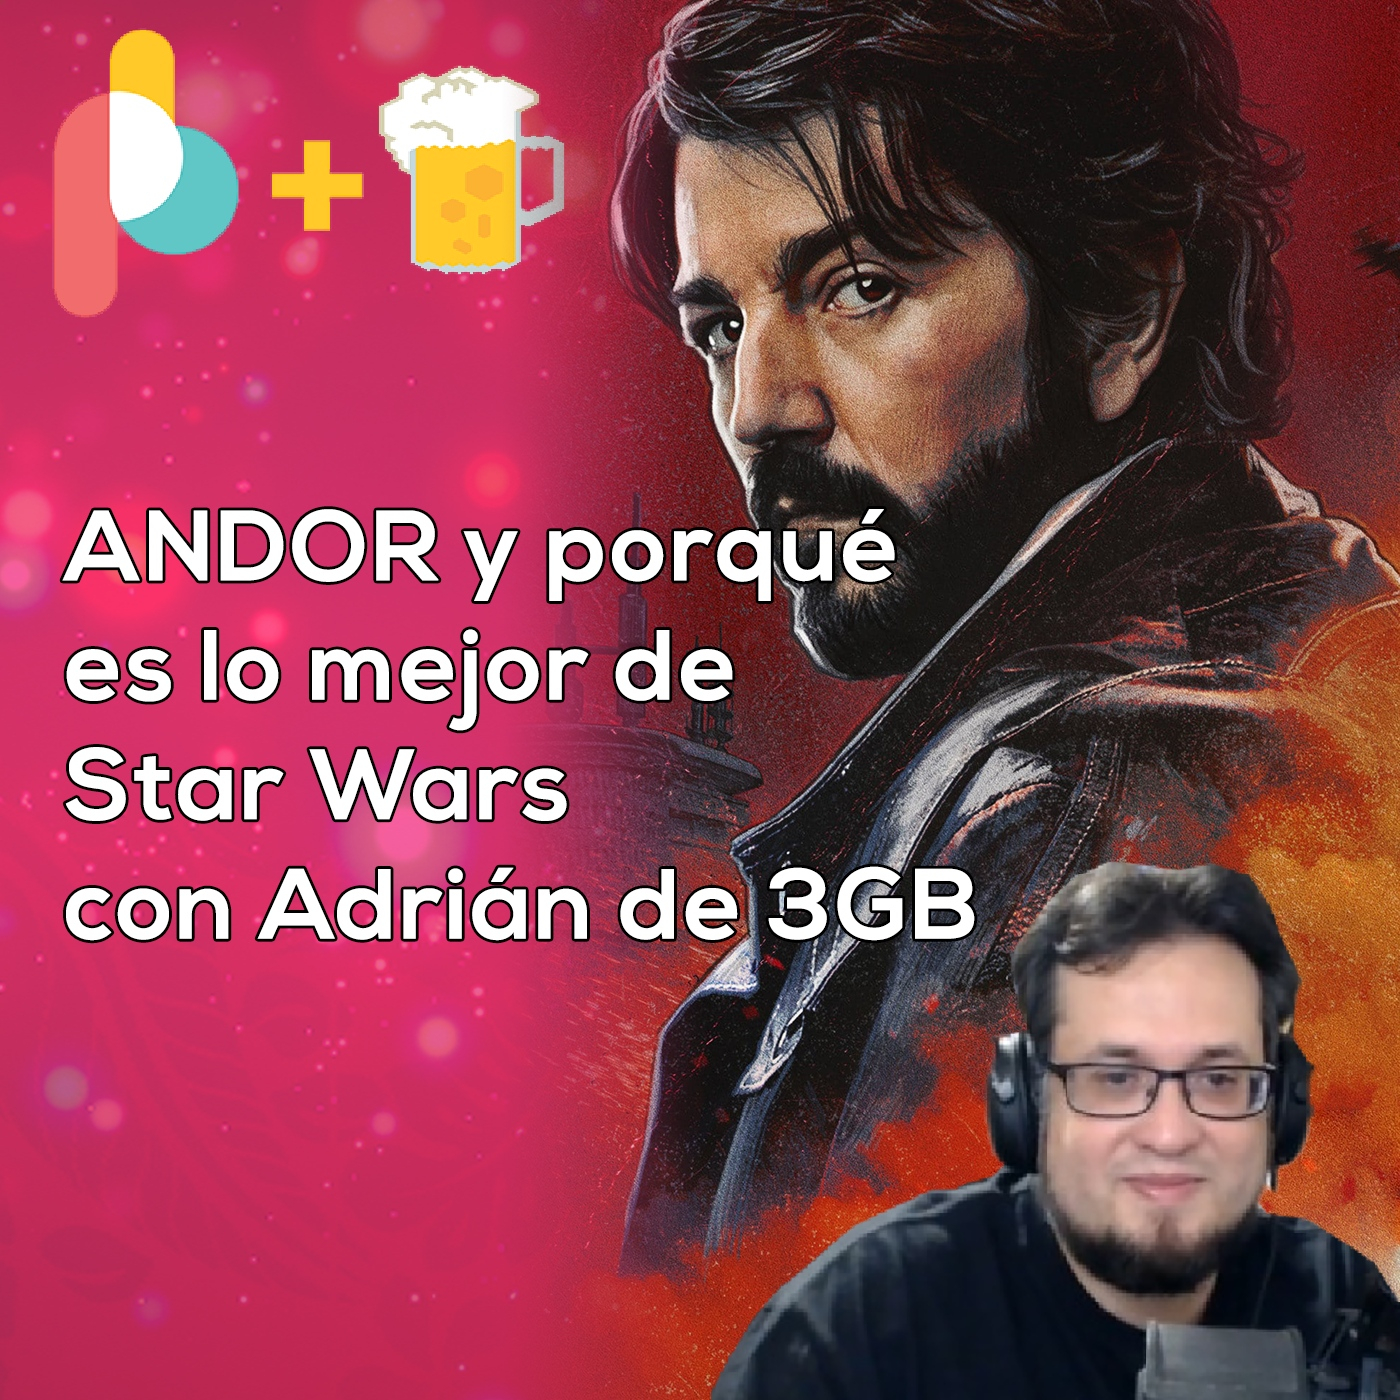 Pixelbits con cerveza 188: Análisis de Andor con Adrian de los 3GB